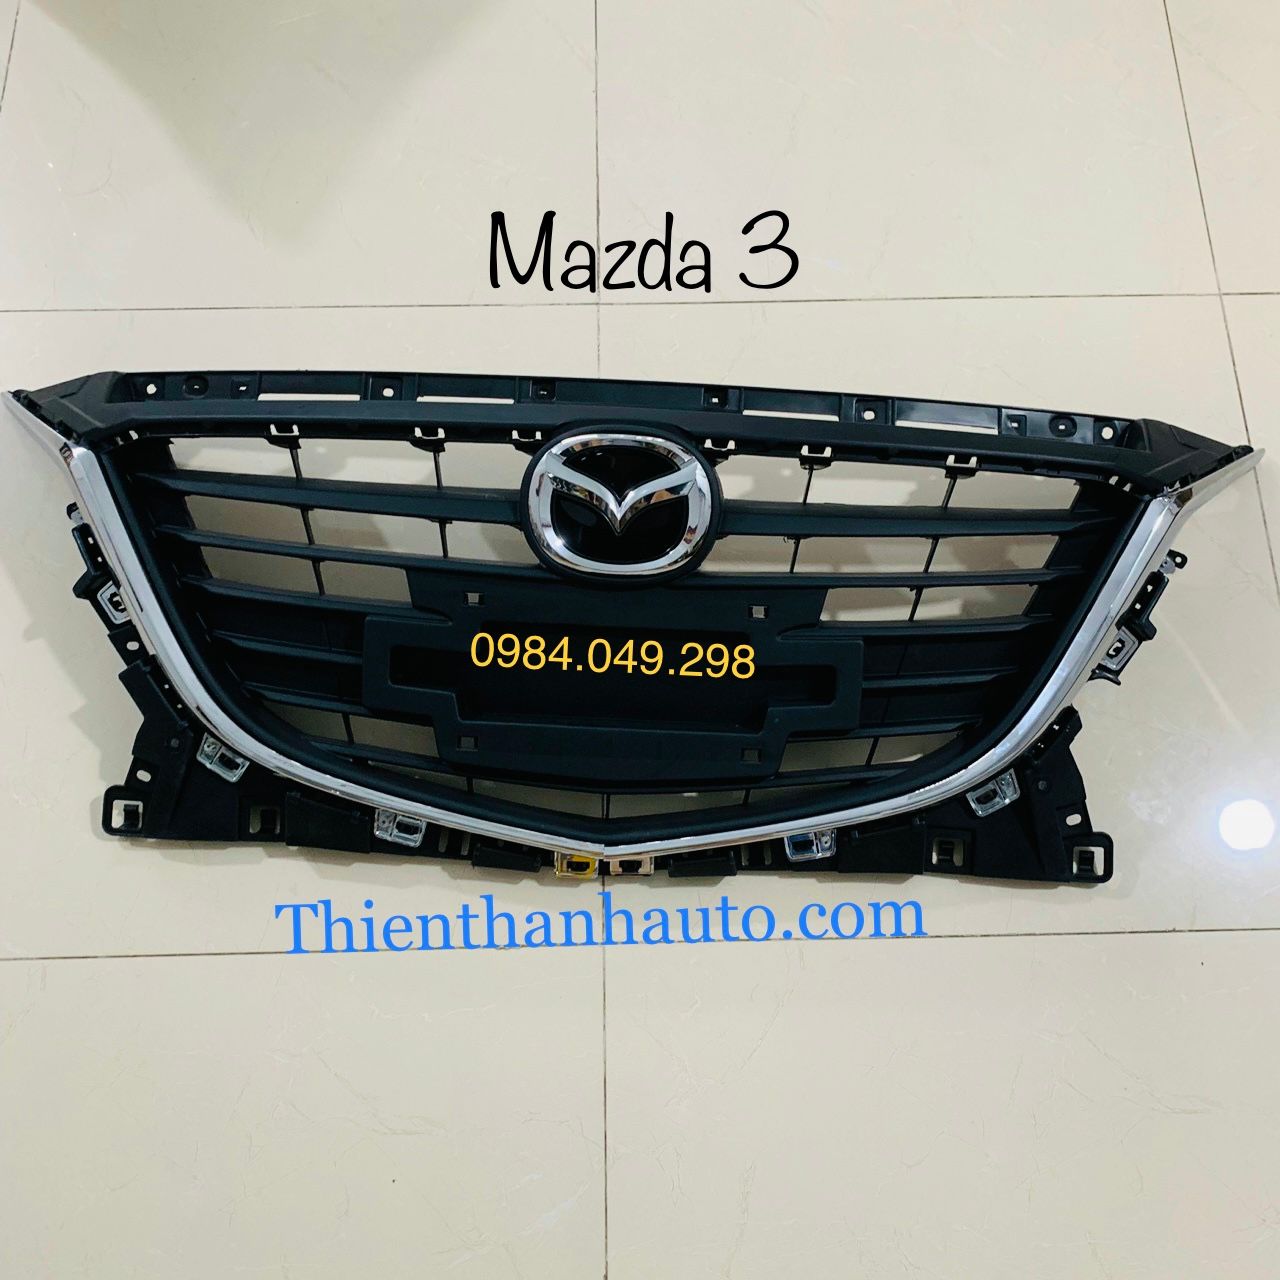 Mặt ca lăng Mazda 3 2015-2016 chính hãng - Thienthanhauto.com